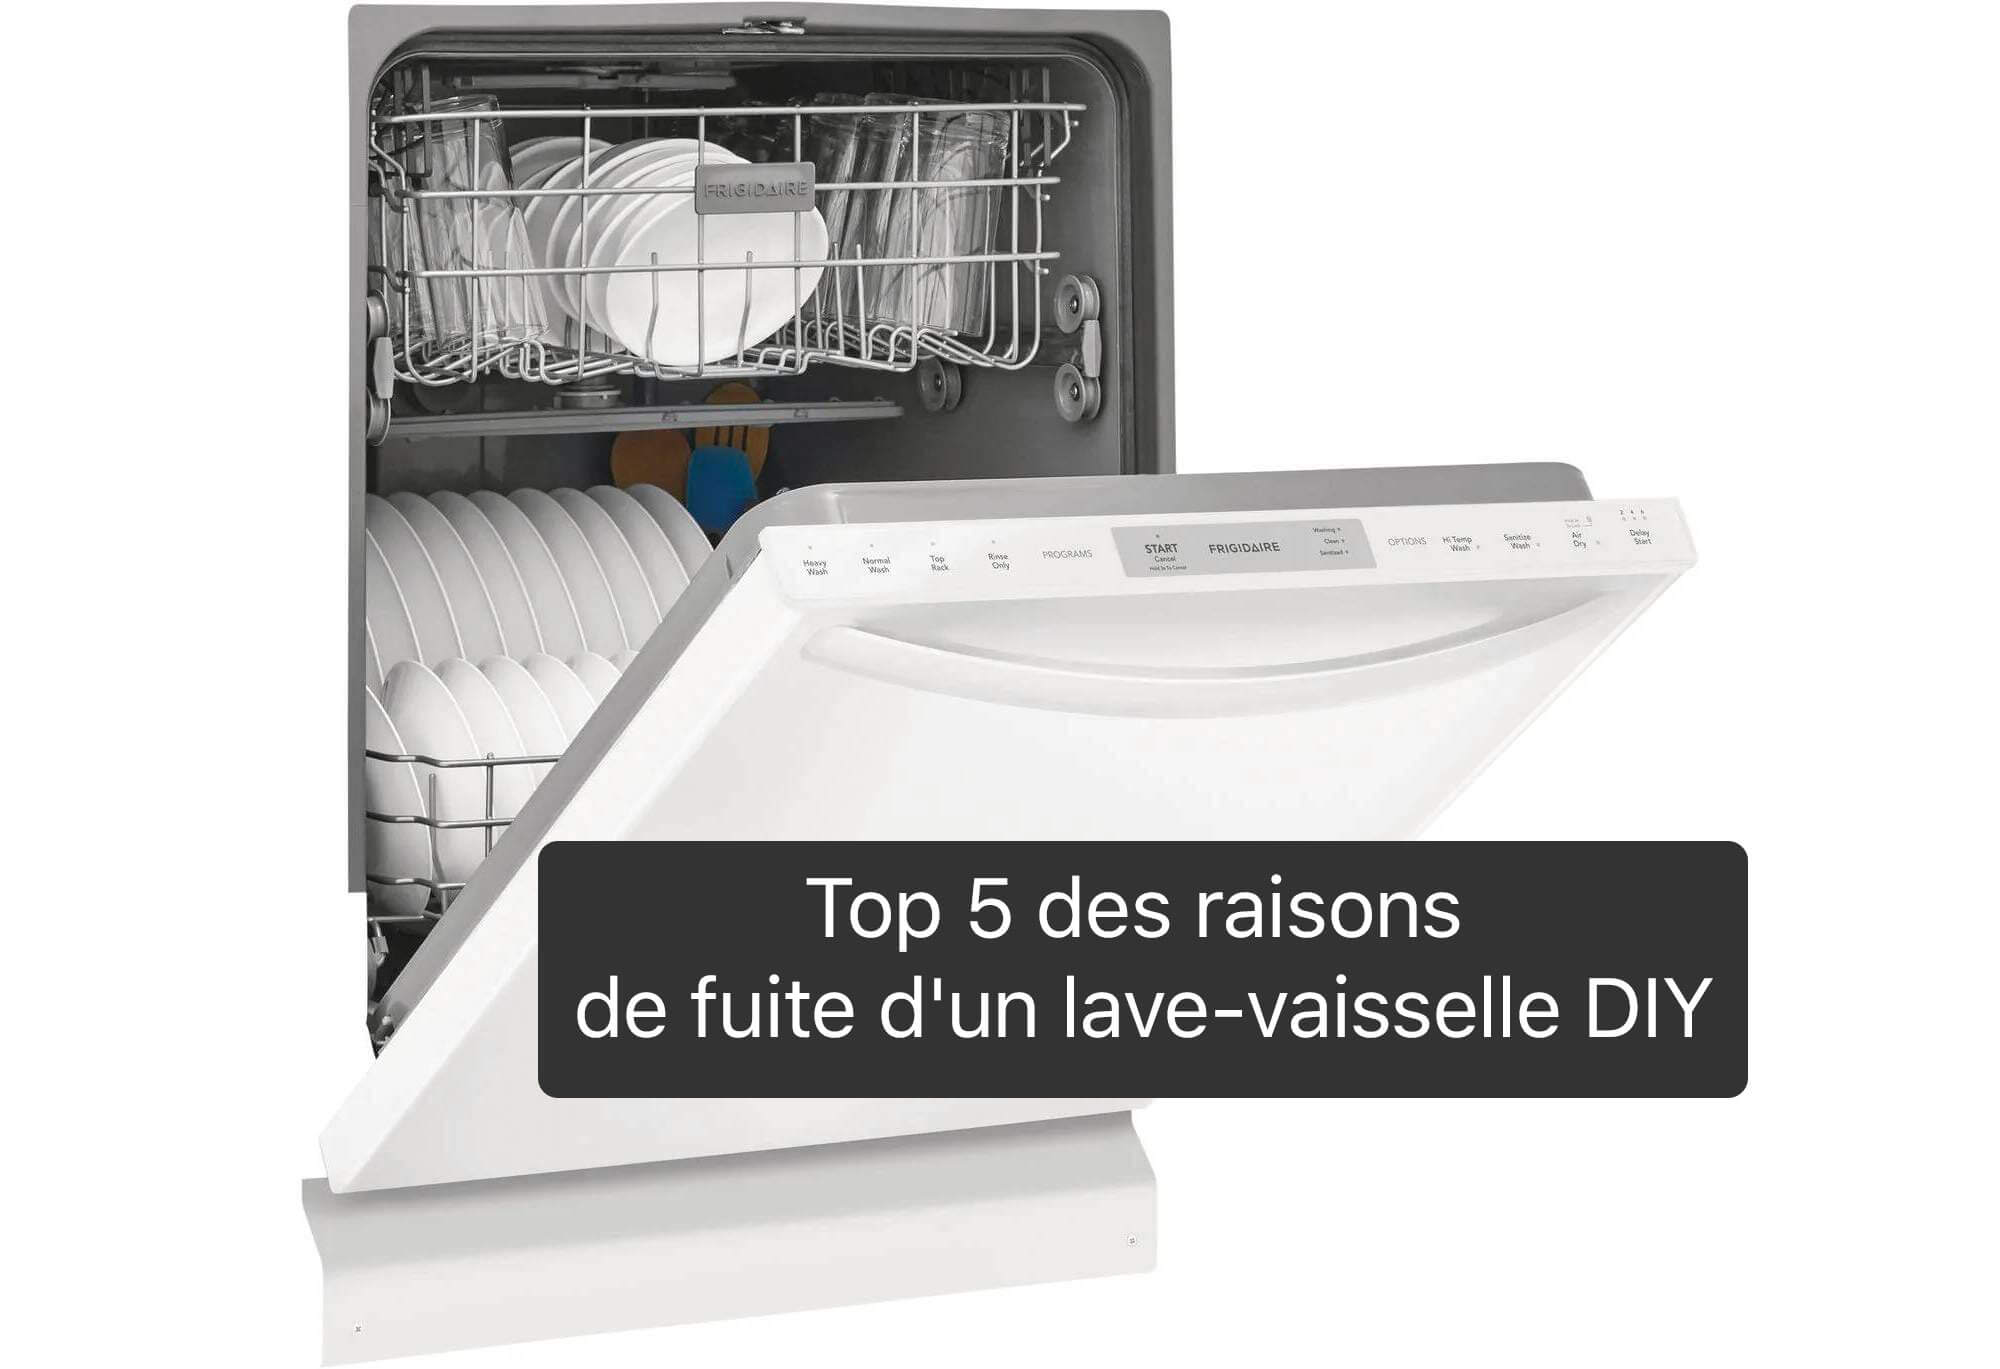 Top 5 des raisons de fuite d'un lave-vaisselle DIY